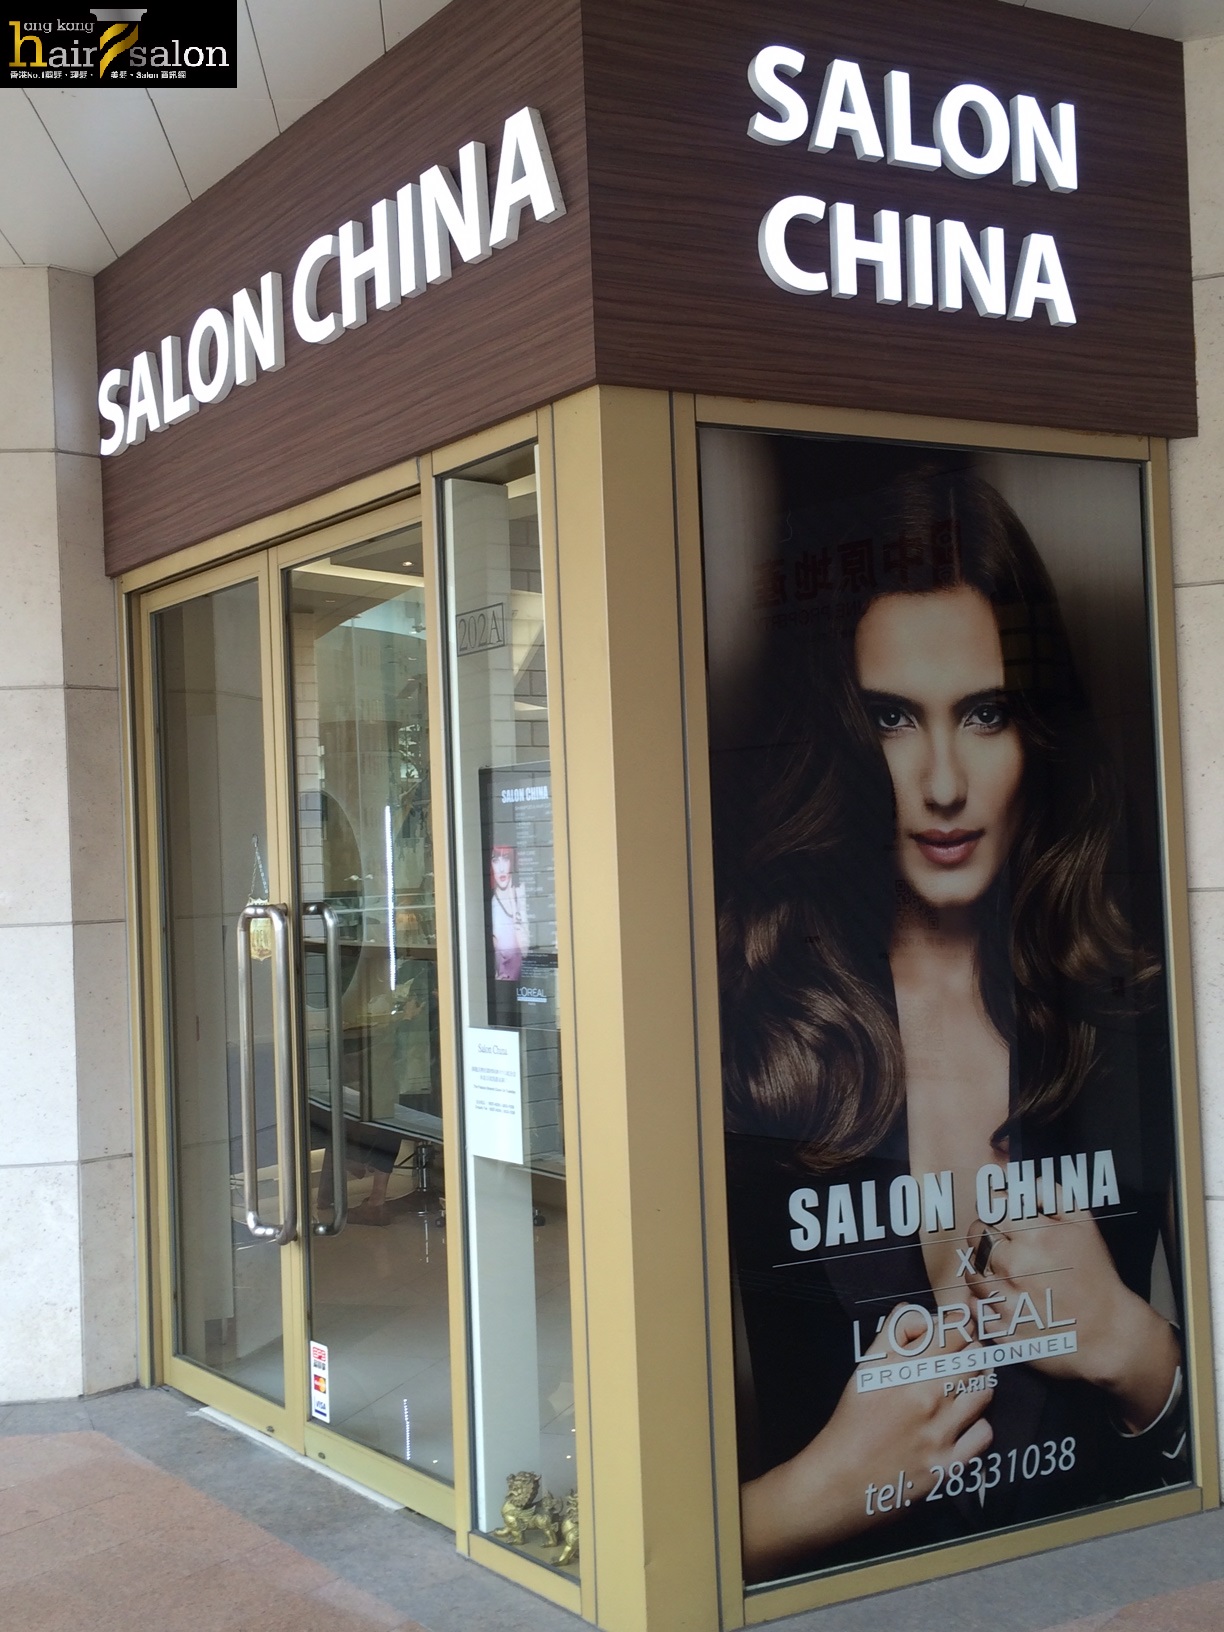 Haircut:  Salon China (御龍山商場, The Palazzo)